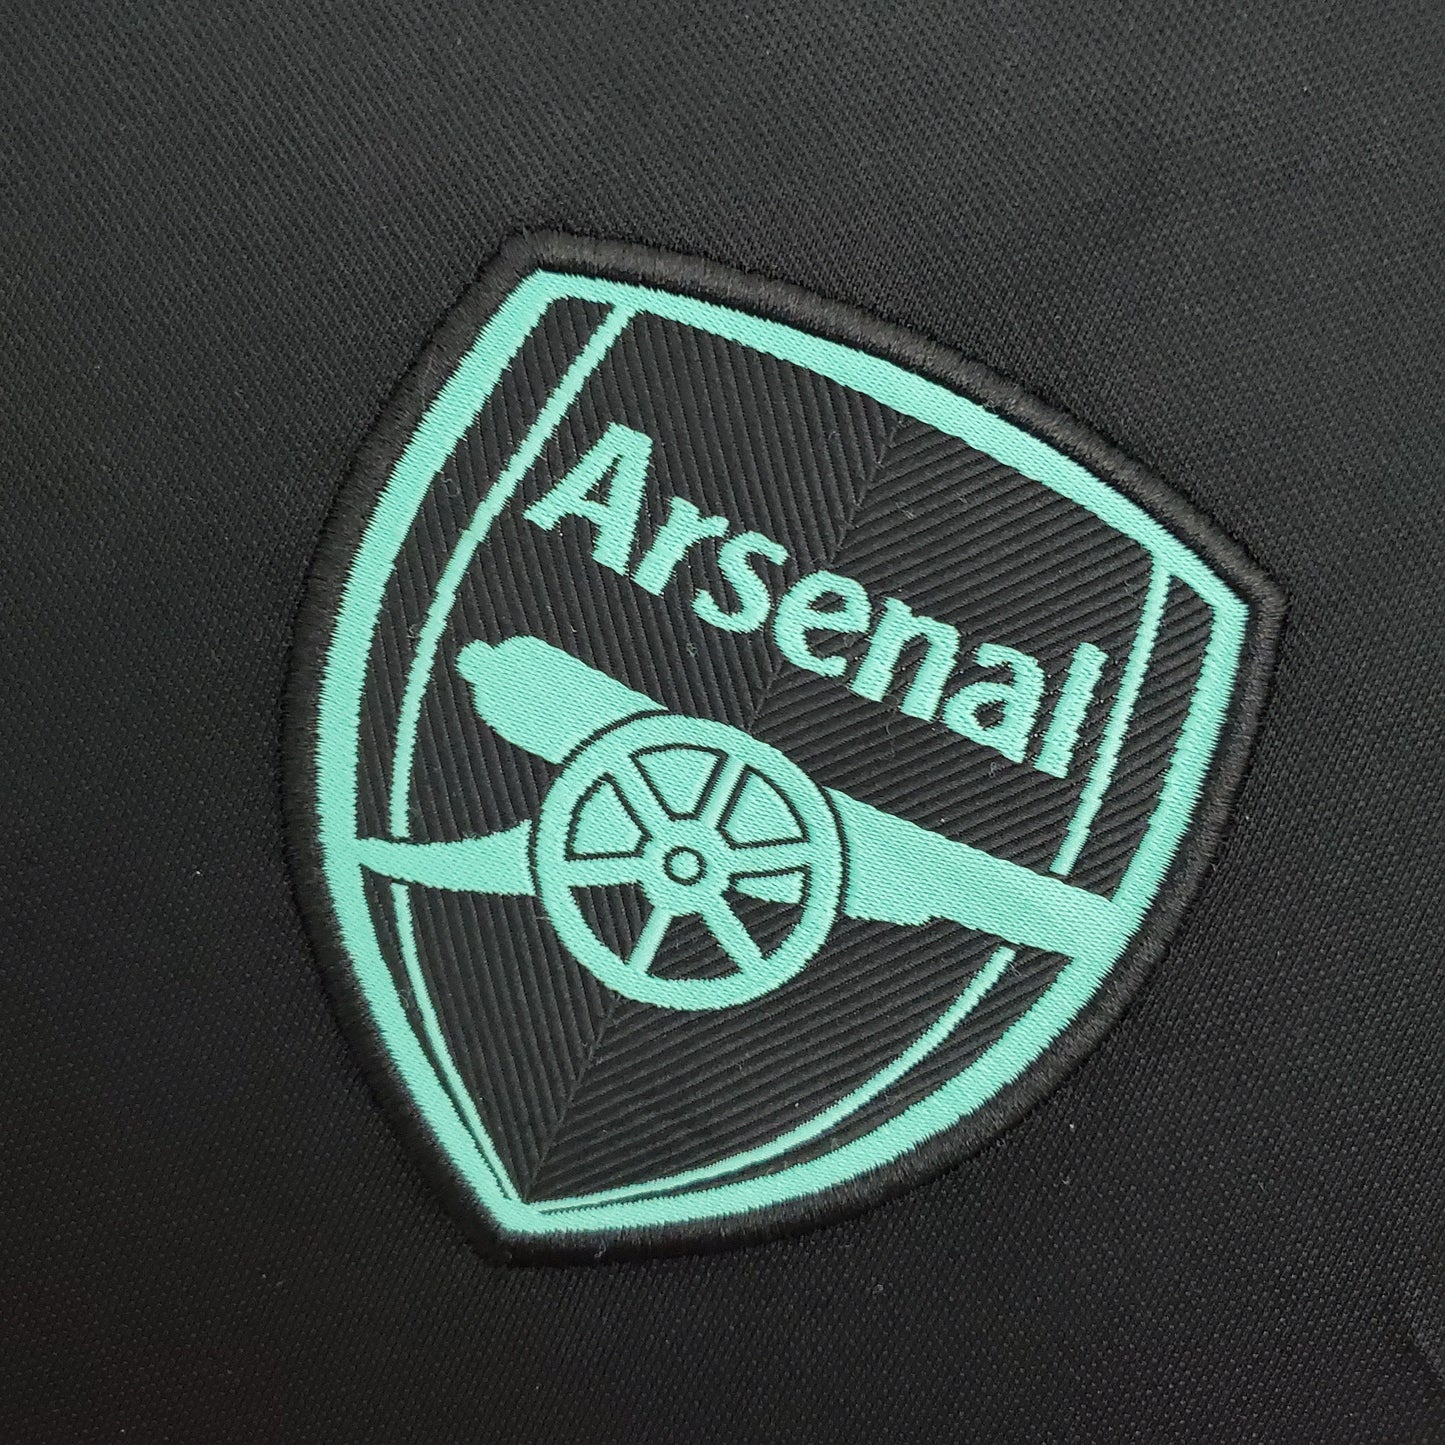 Arsenal Training kit 21/22